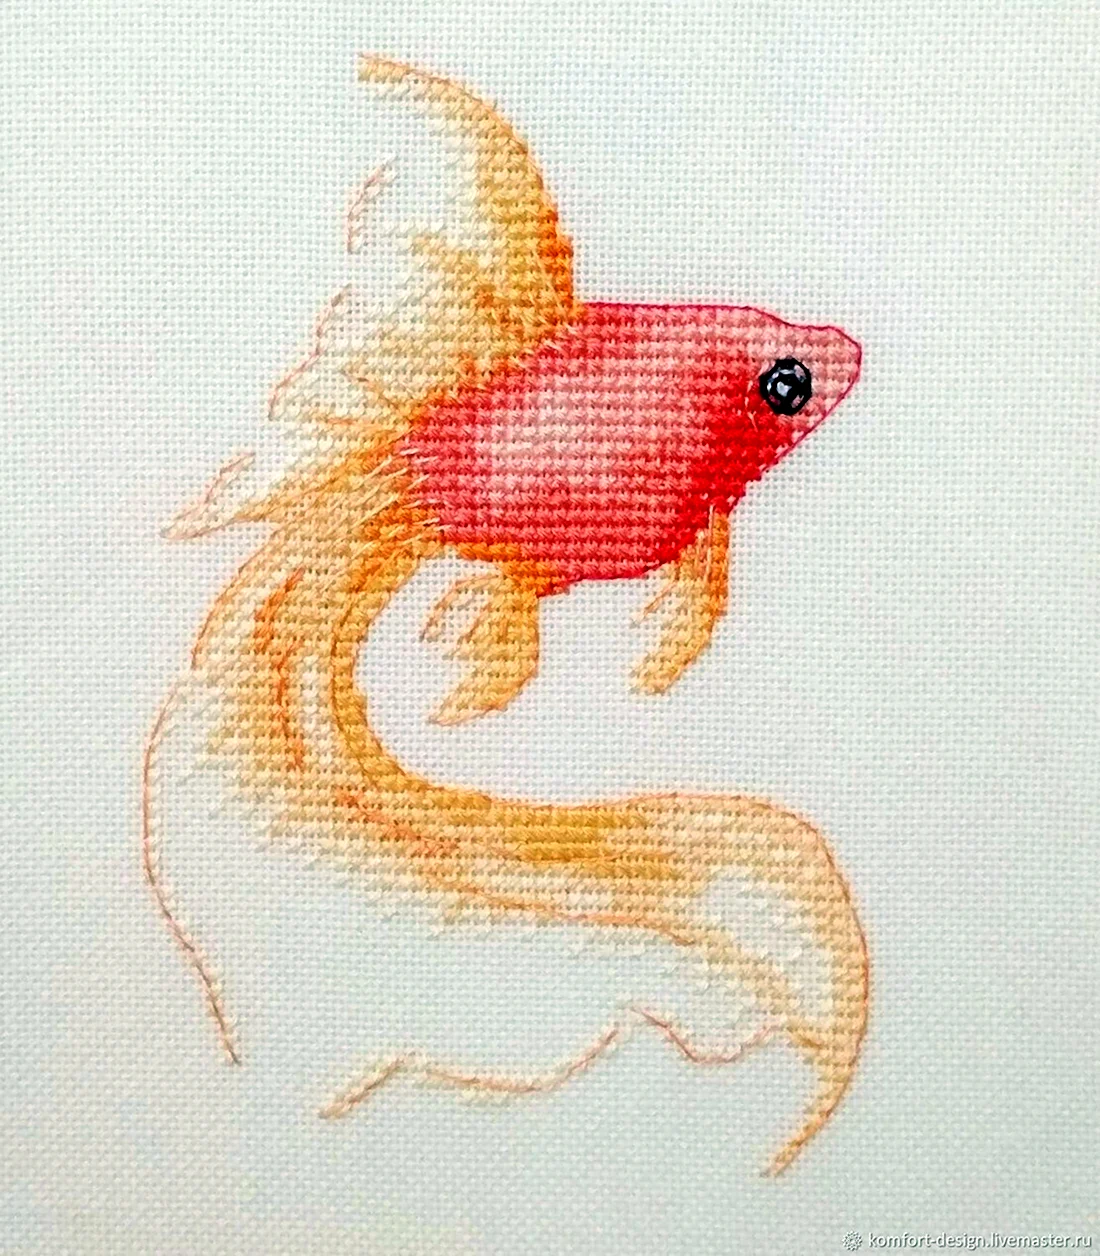 Схема Инны Пешковой Золотая рыбка